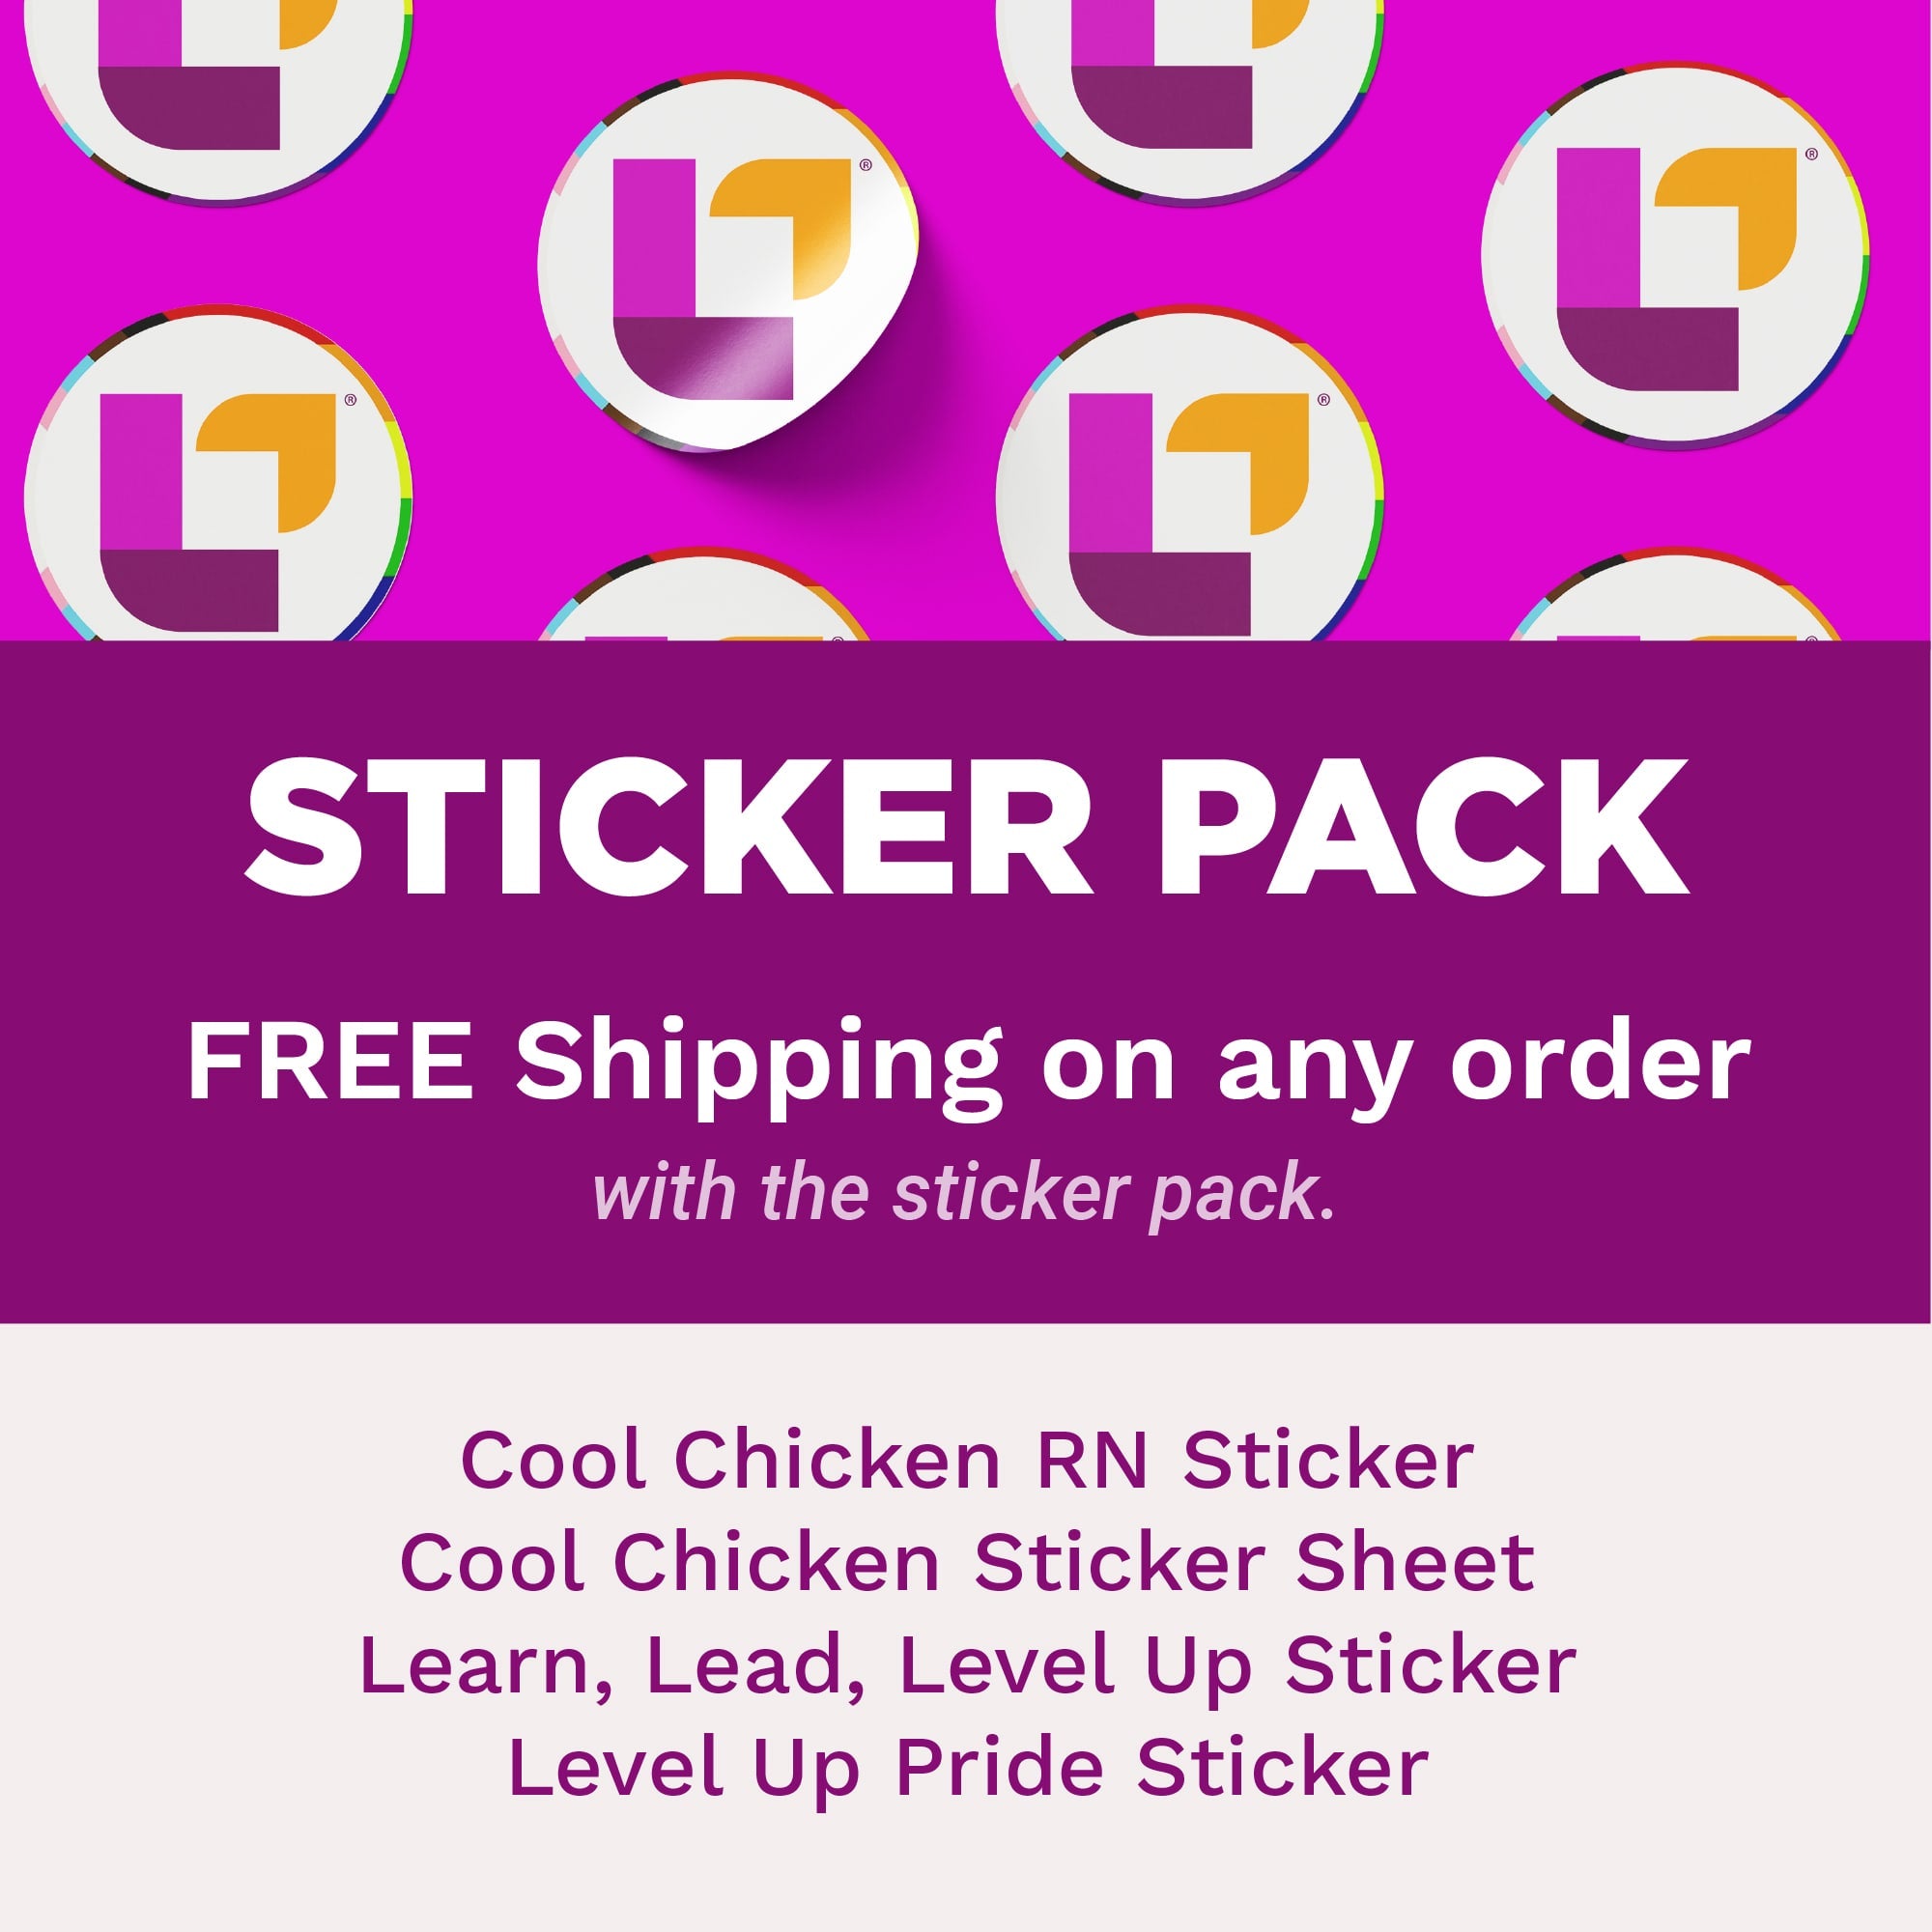 Super Sticker Pack - Stickers - LevelUpRN